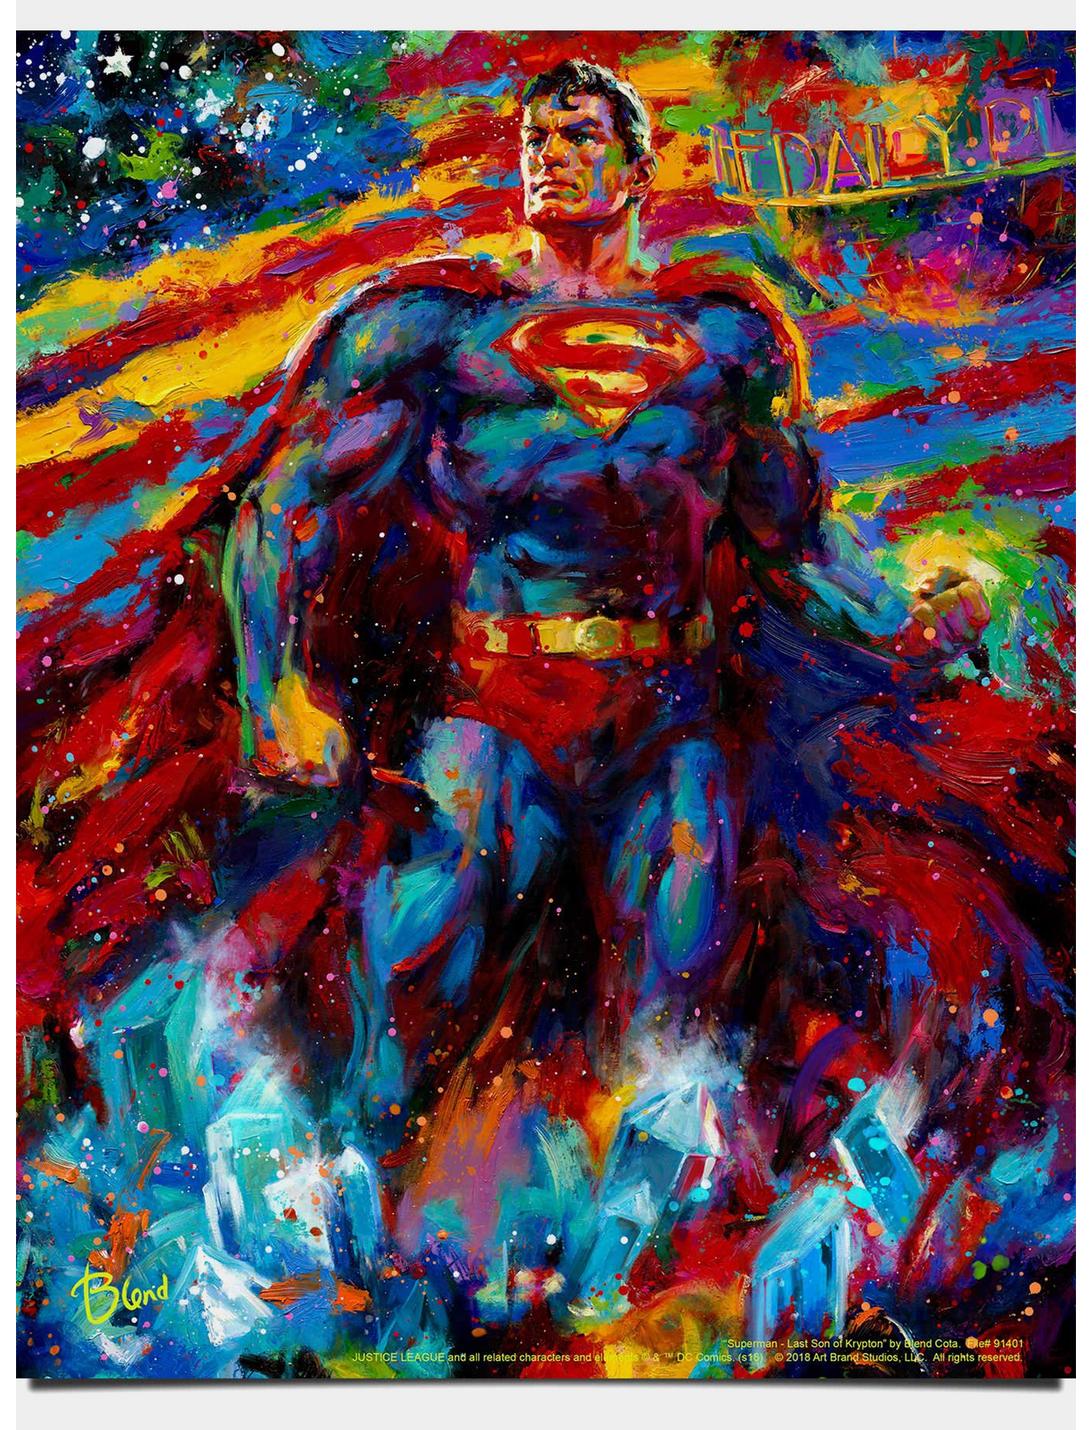 DC Comics Superman Last Son Of Krypton Art Print, , hi-res